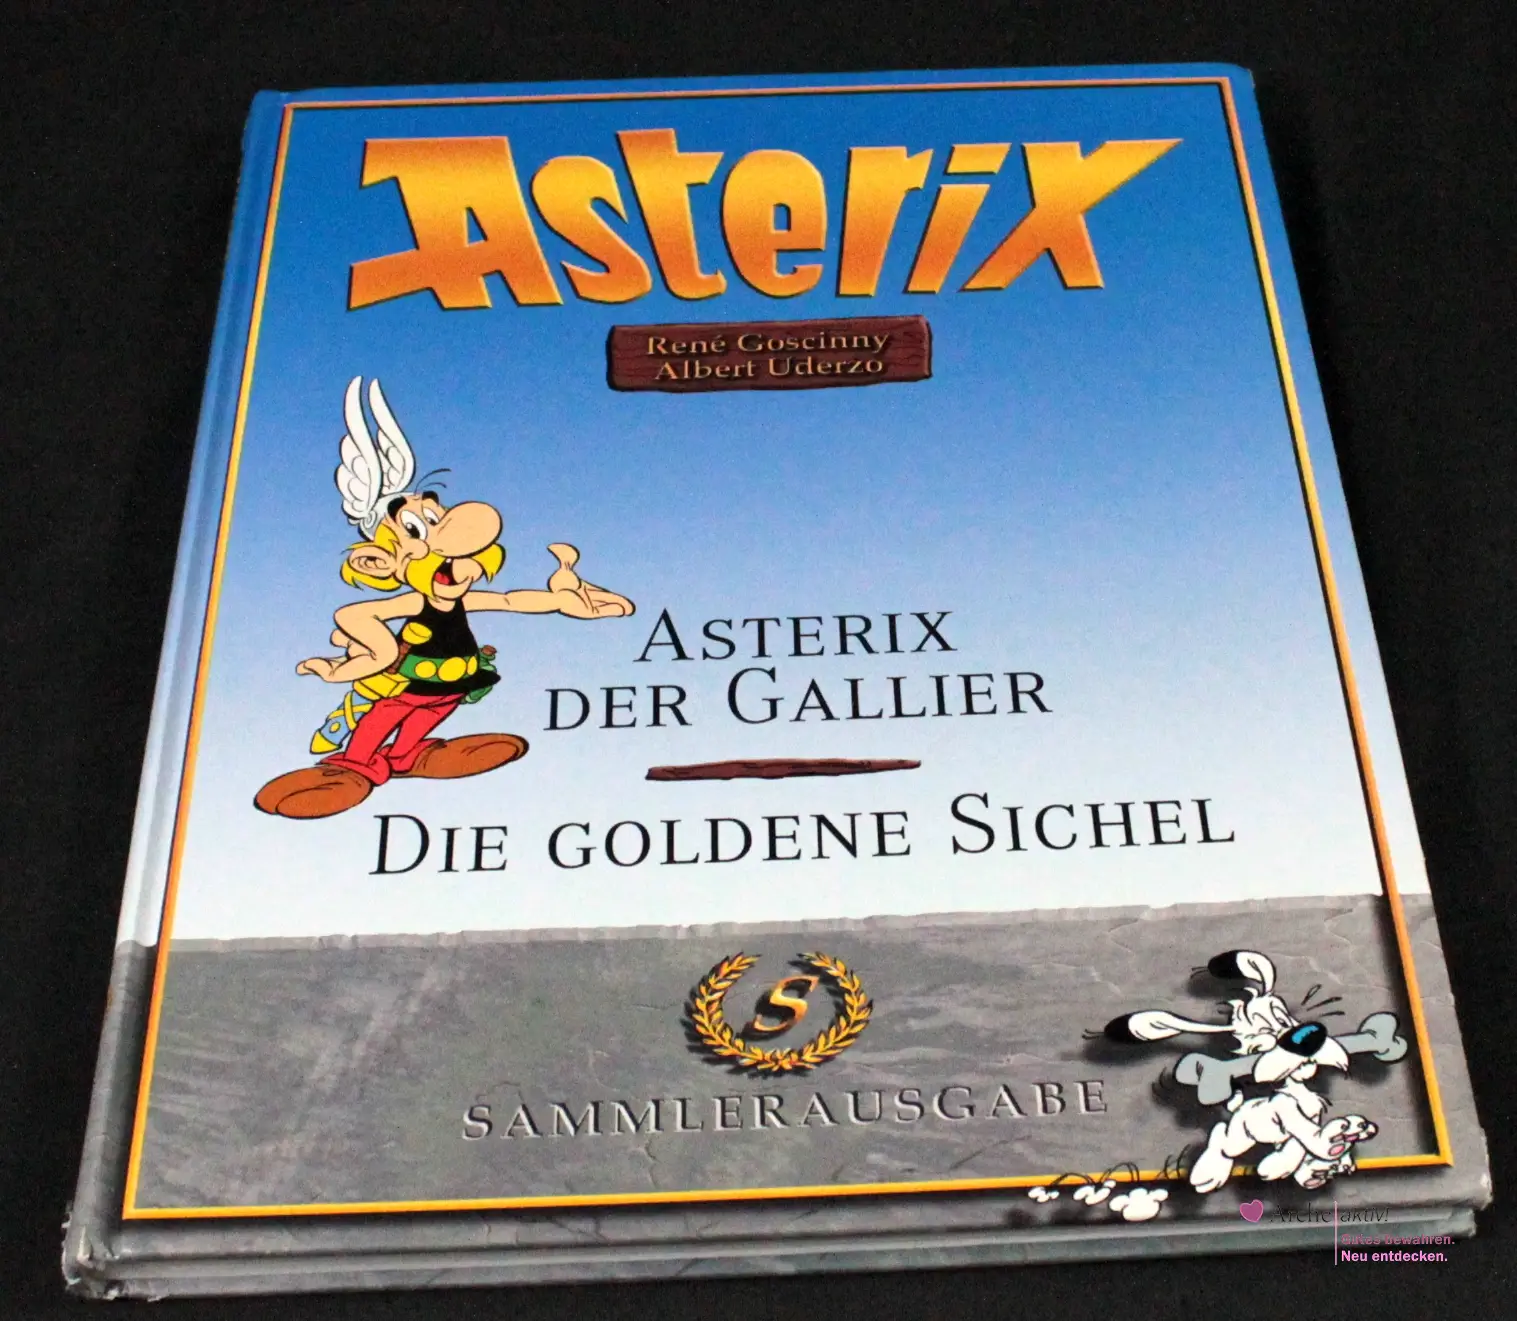 Asterix Sammlerausgabe - Asterix der Gallier / Die goldene Sichel, gebraucht